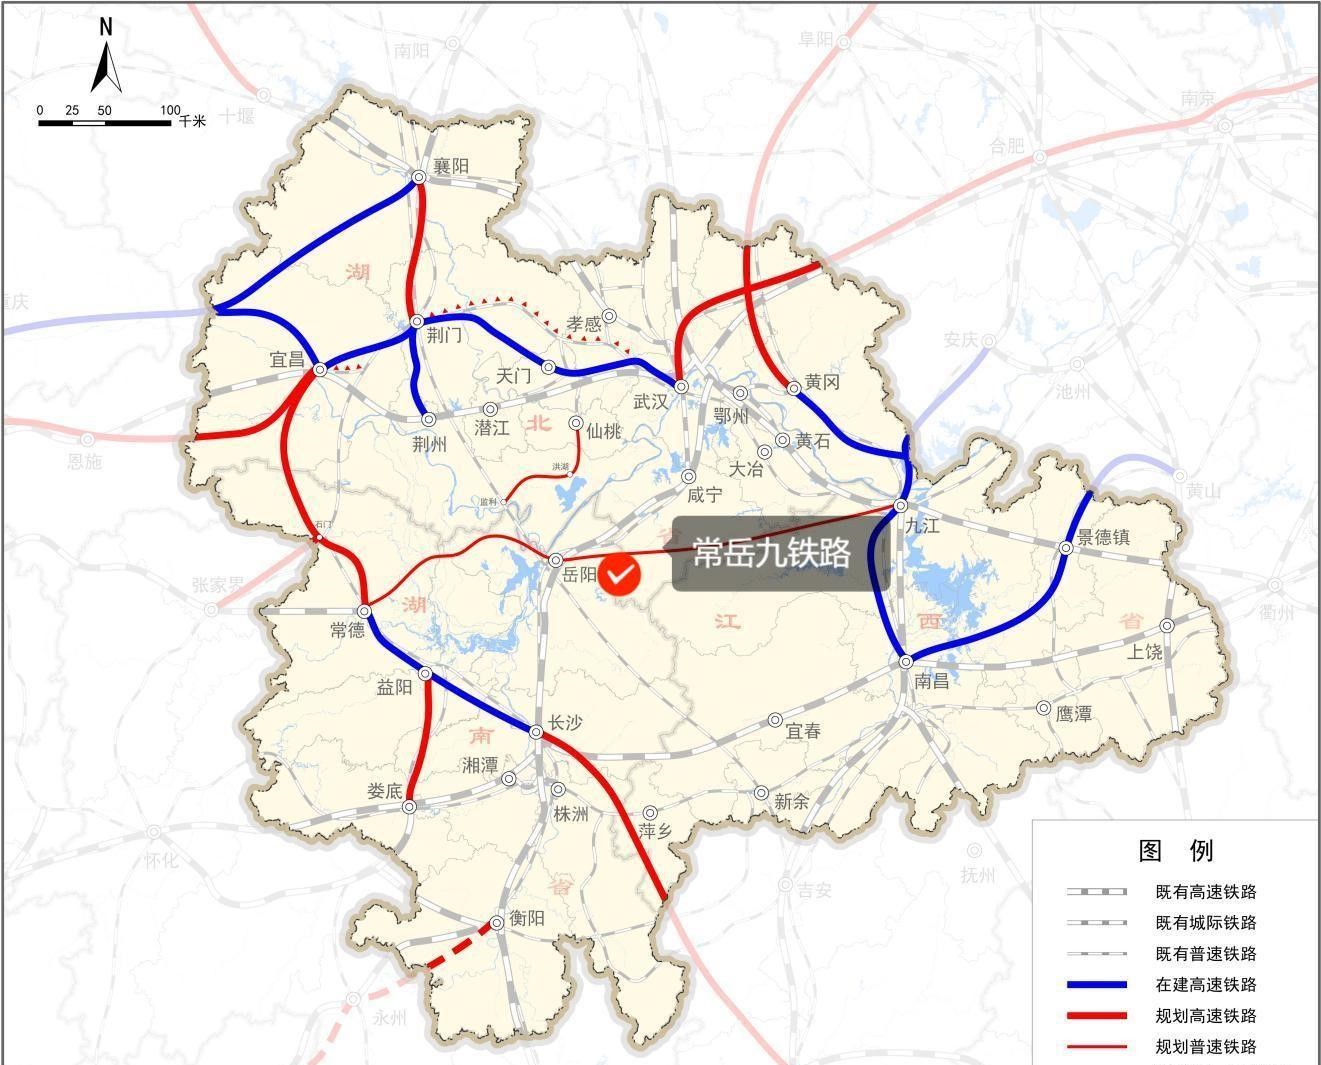 Entrée dans la nouvelle planification de la route de Yiwu